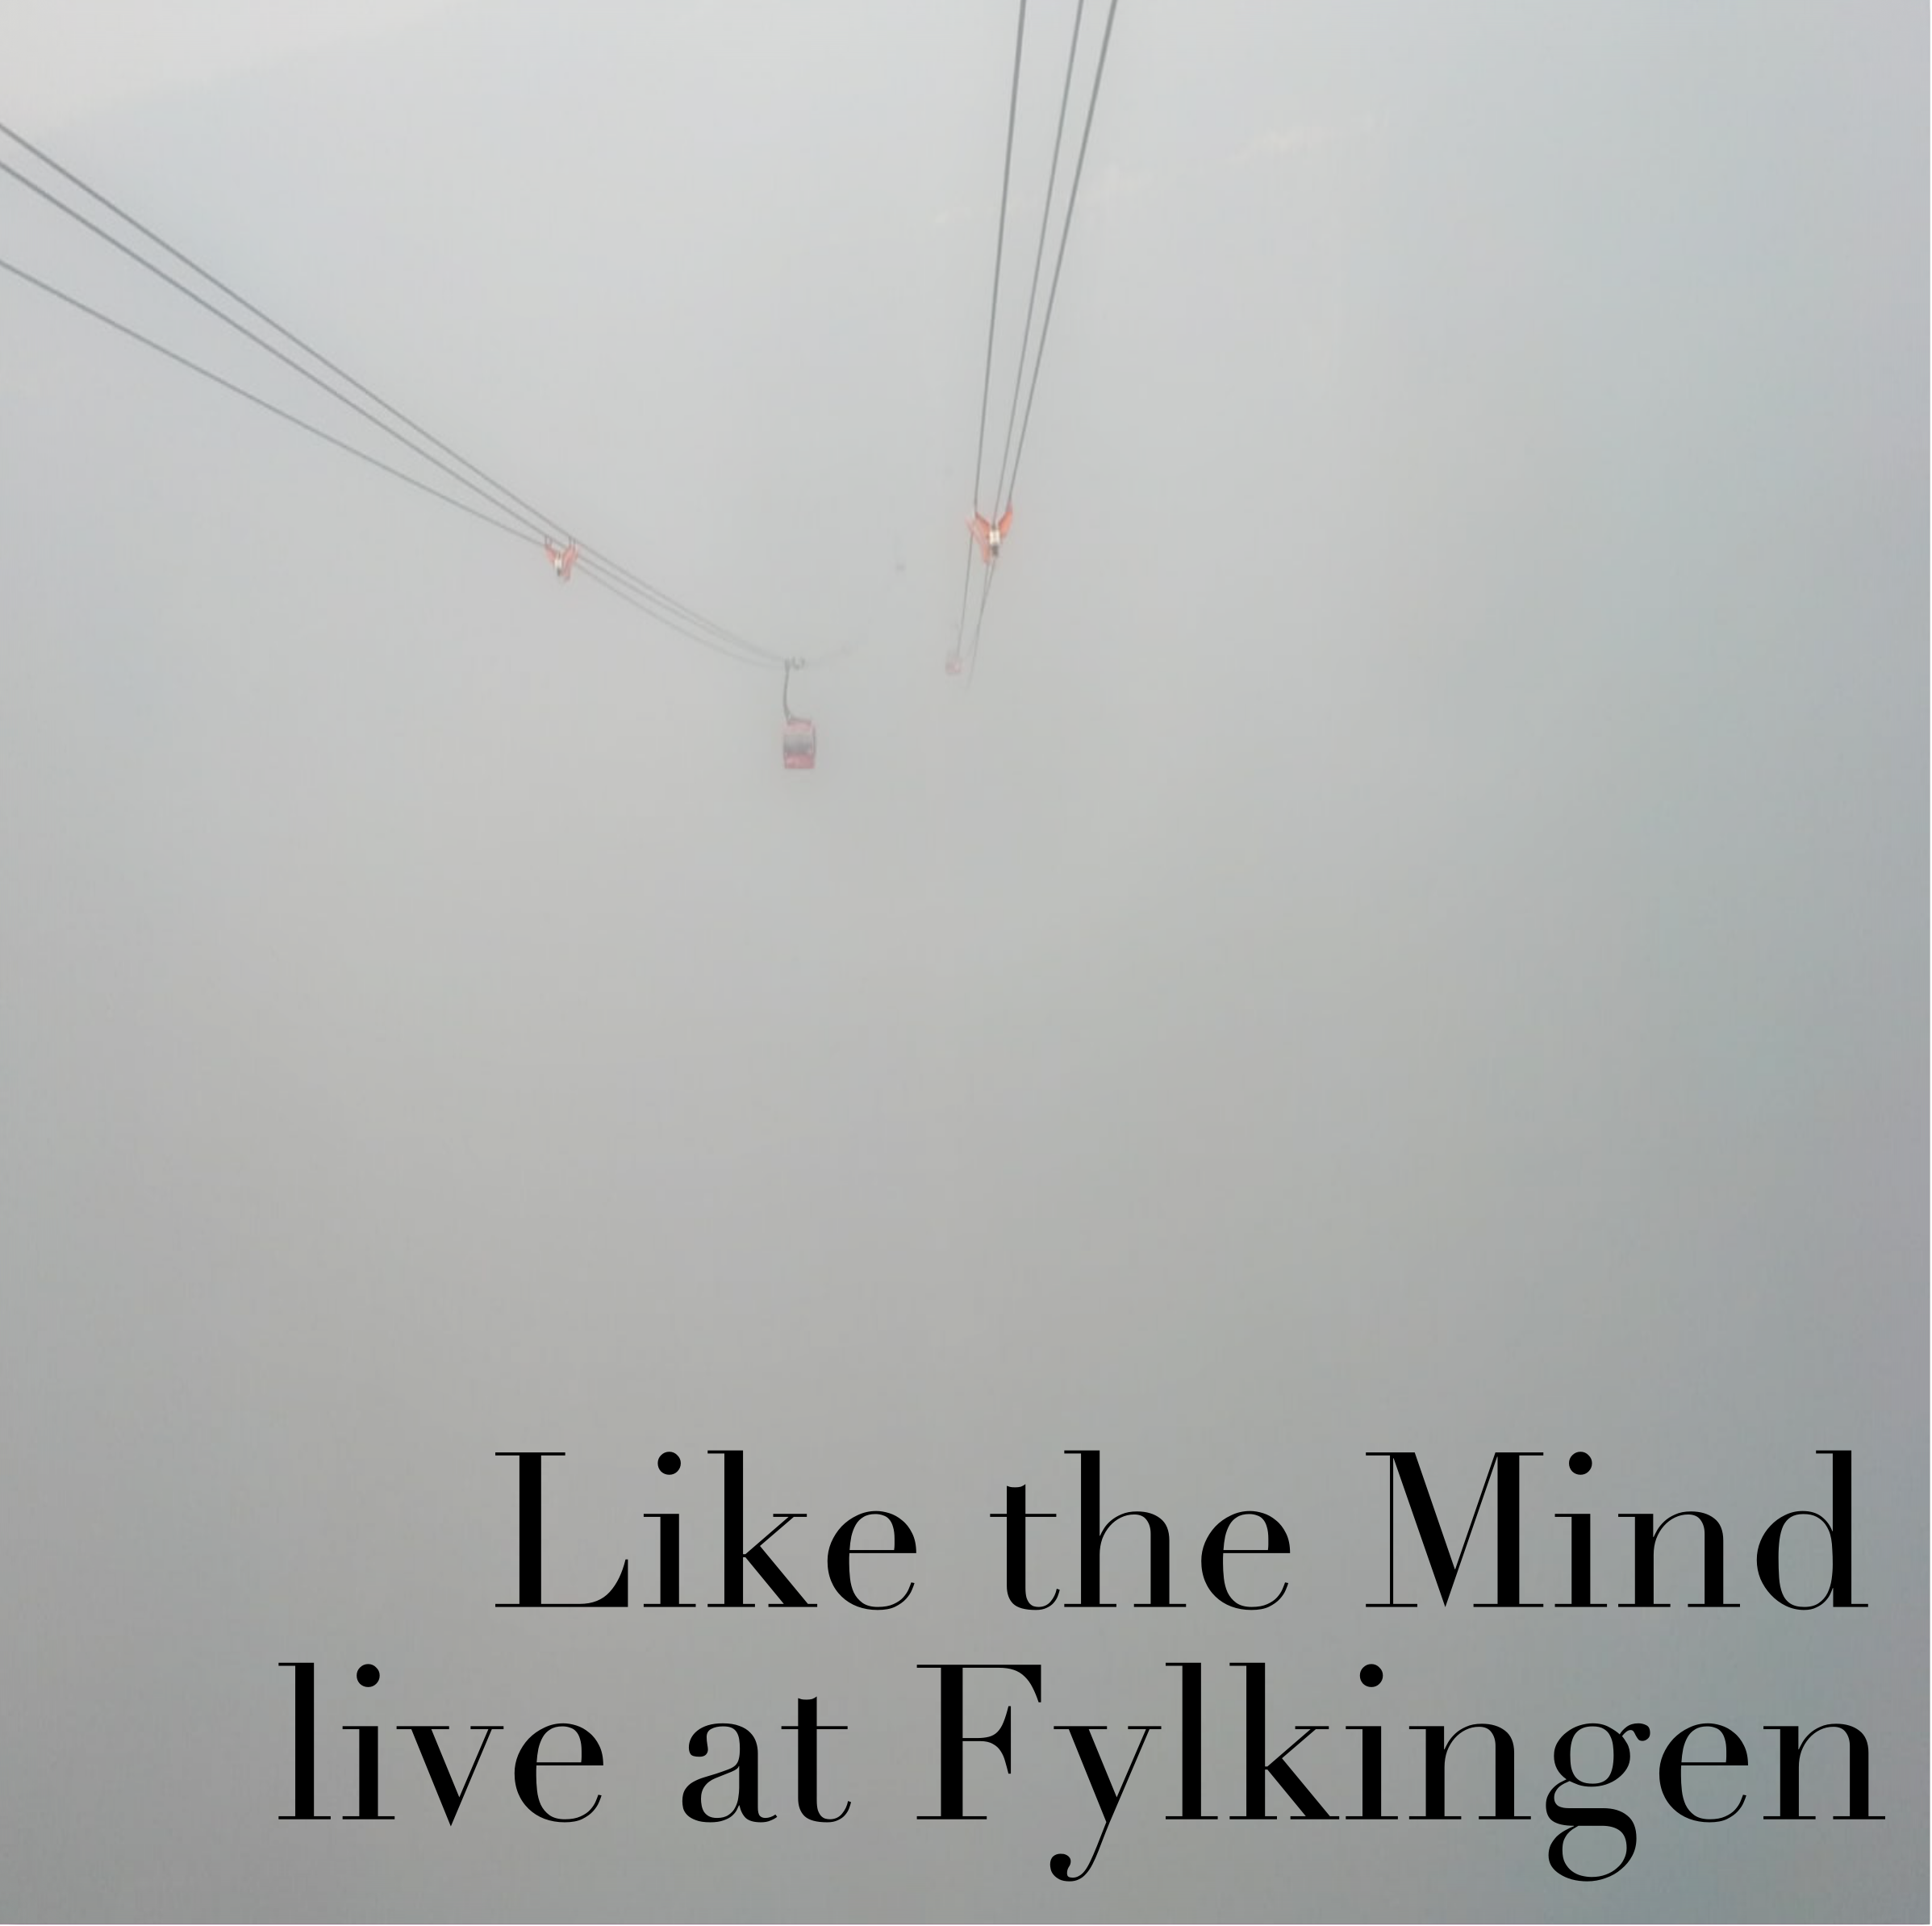 Live at Fylkingen